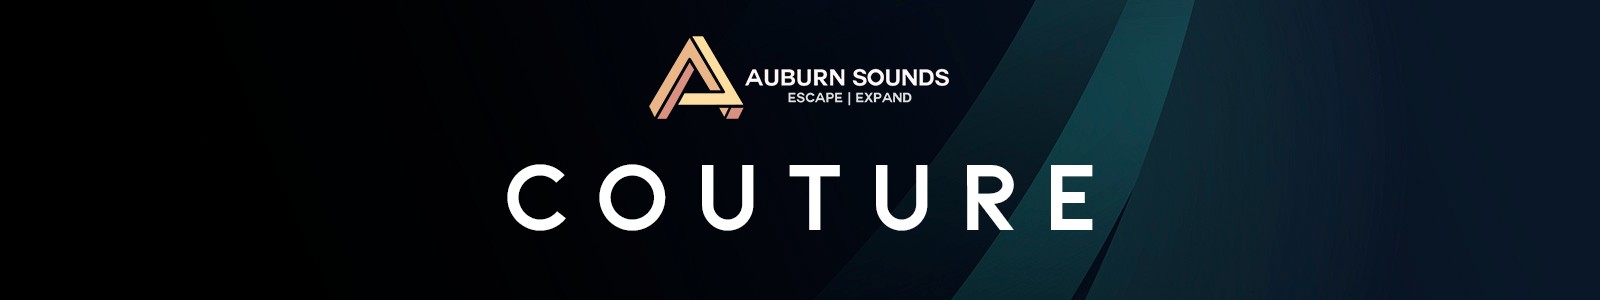 Auburn Sounds Couture